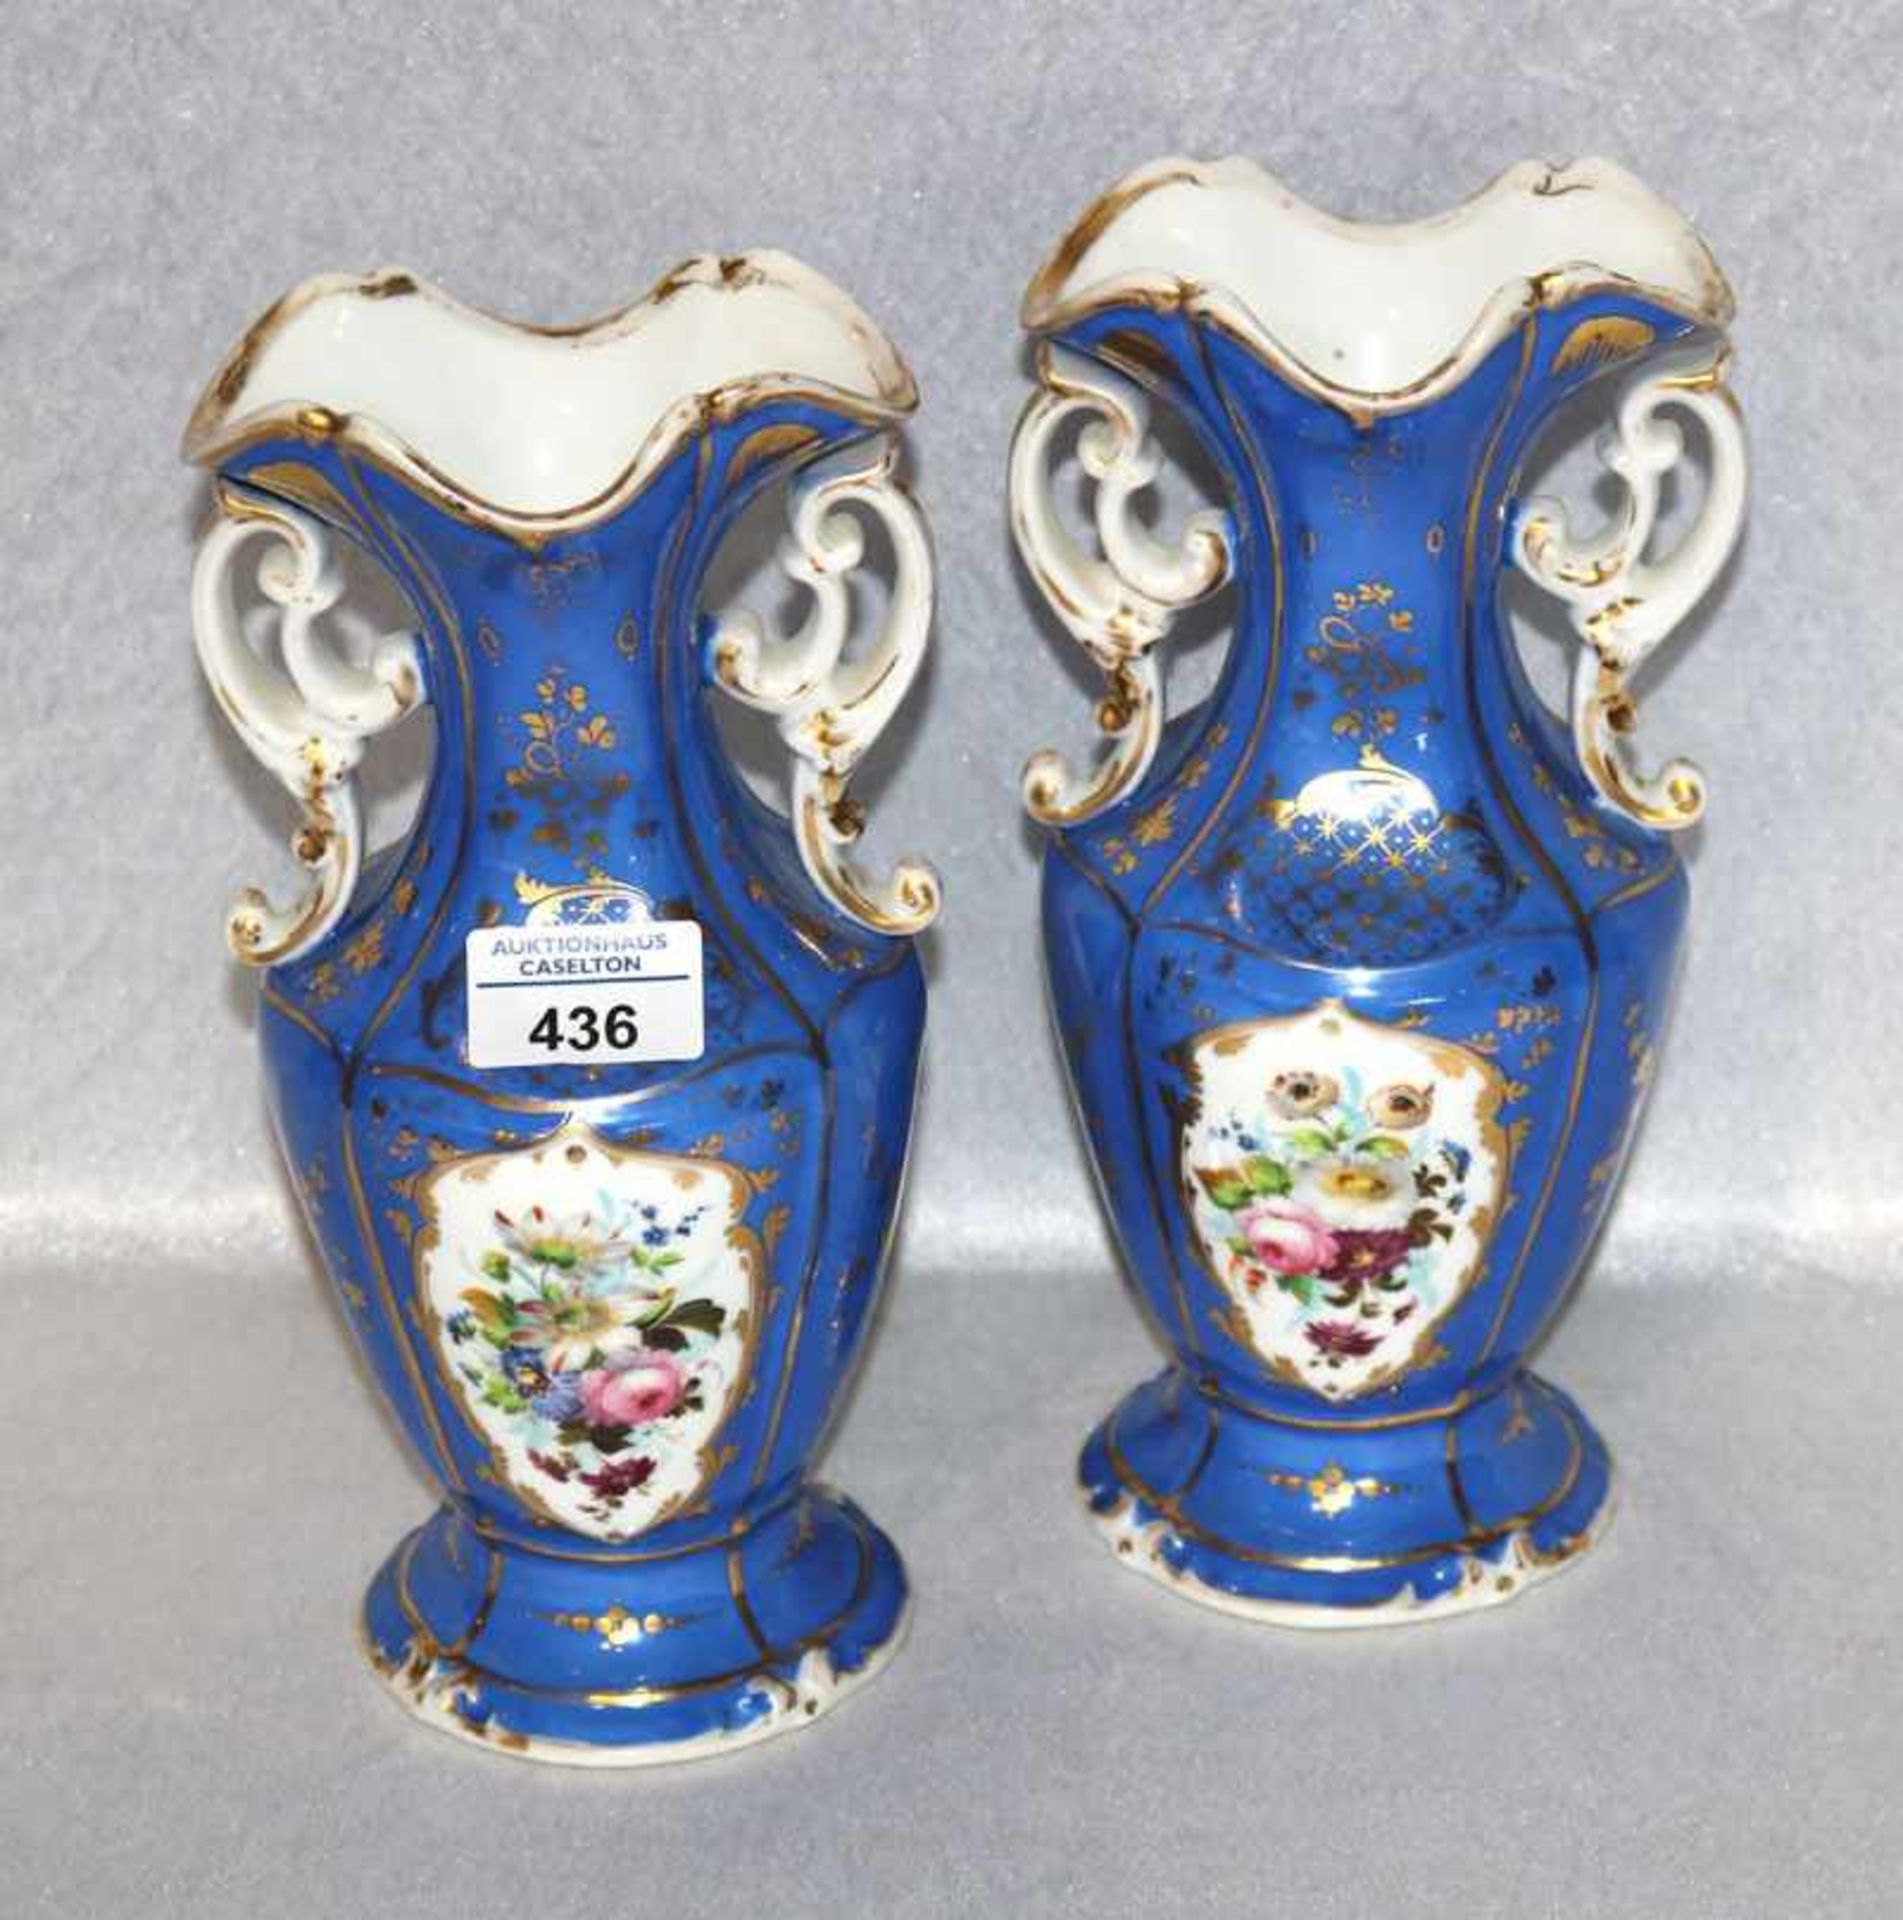 Paar Porzellan Vasen mit seitlichen Handhaben, blau mit buntem Blumen- und Golddekor, teils berieben